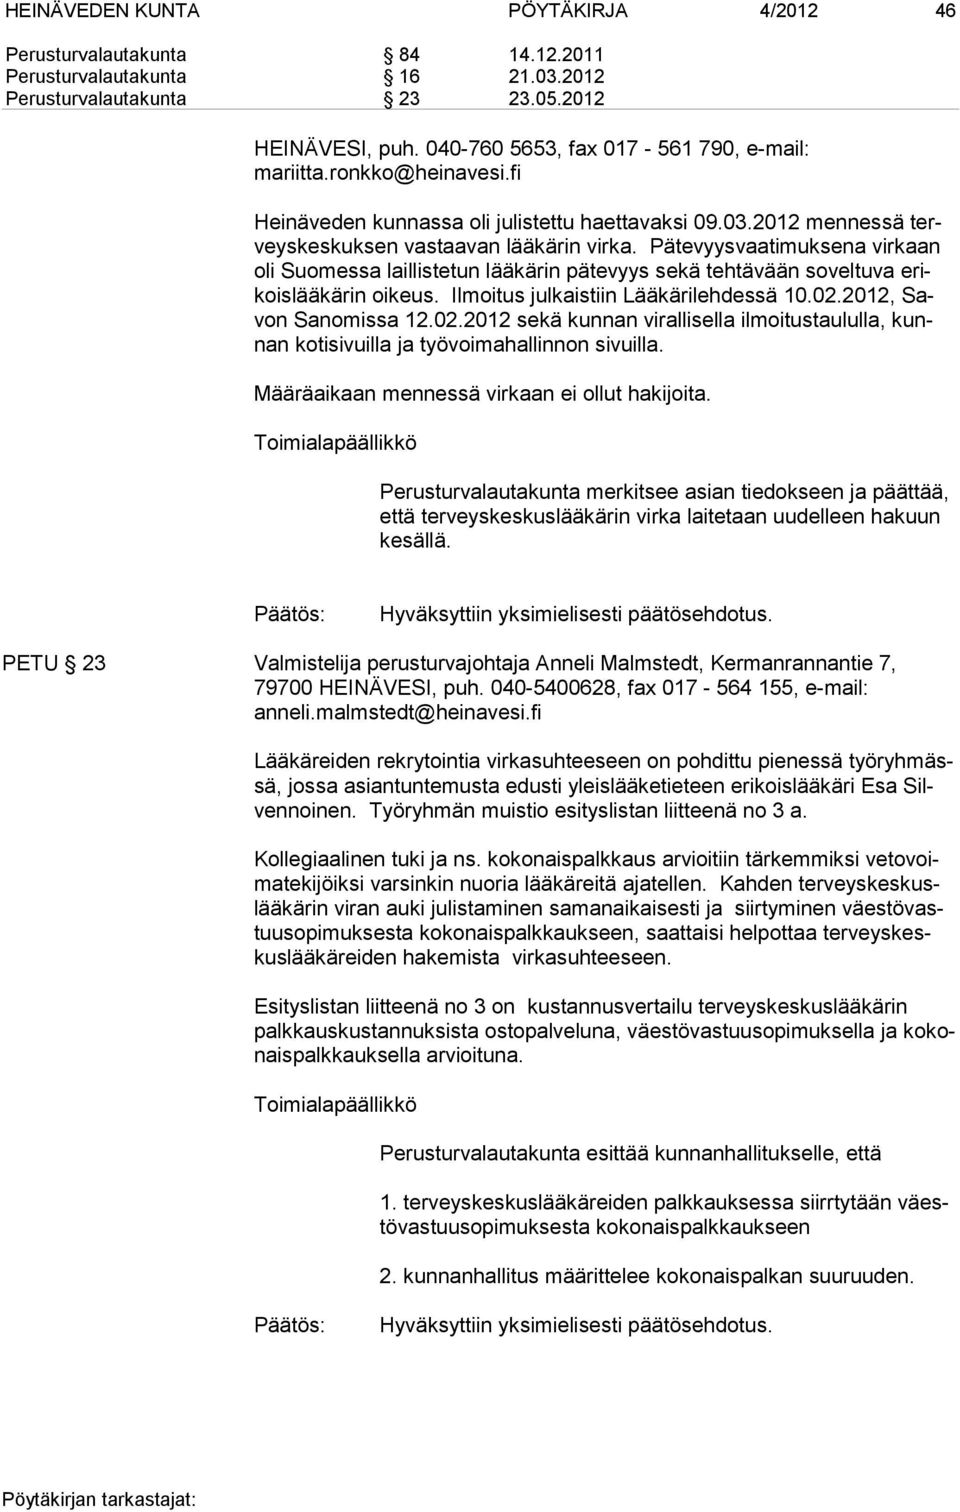 Pätevyysvaatimuksena virkaan oli Suomessa laillistetun lääkärin pätevyys sekä tehtävään soveltuva erikoislääkärin oikeus. Ilmoitus julkaistiin Lääkärilehdessä 10.02.